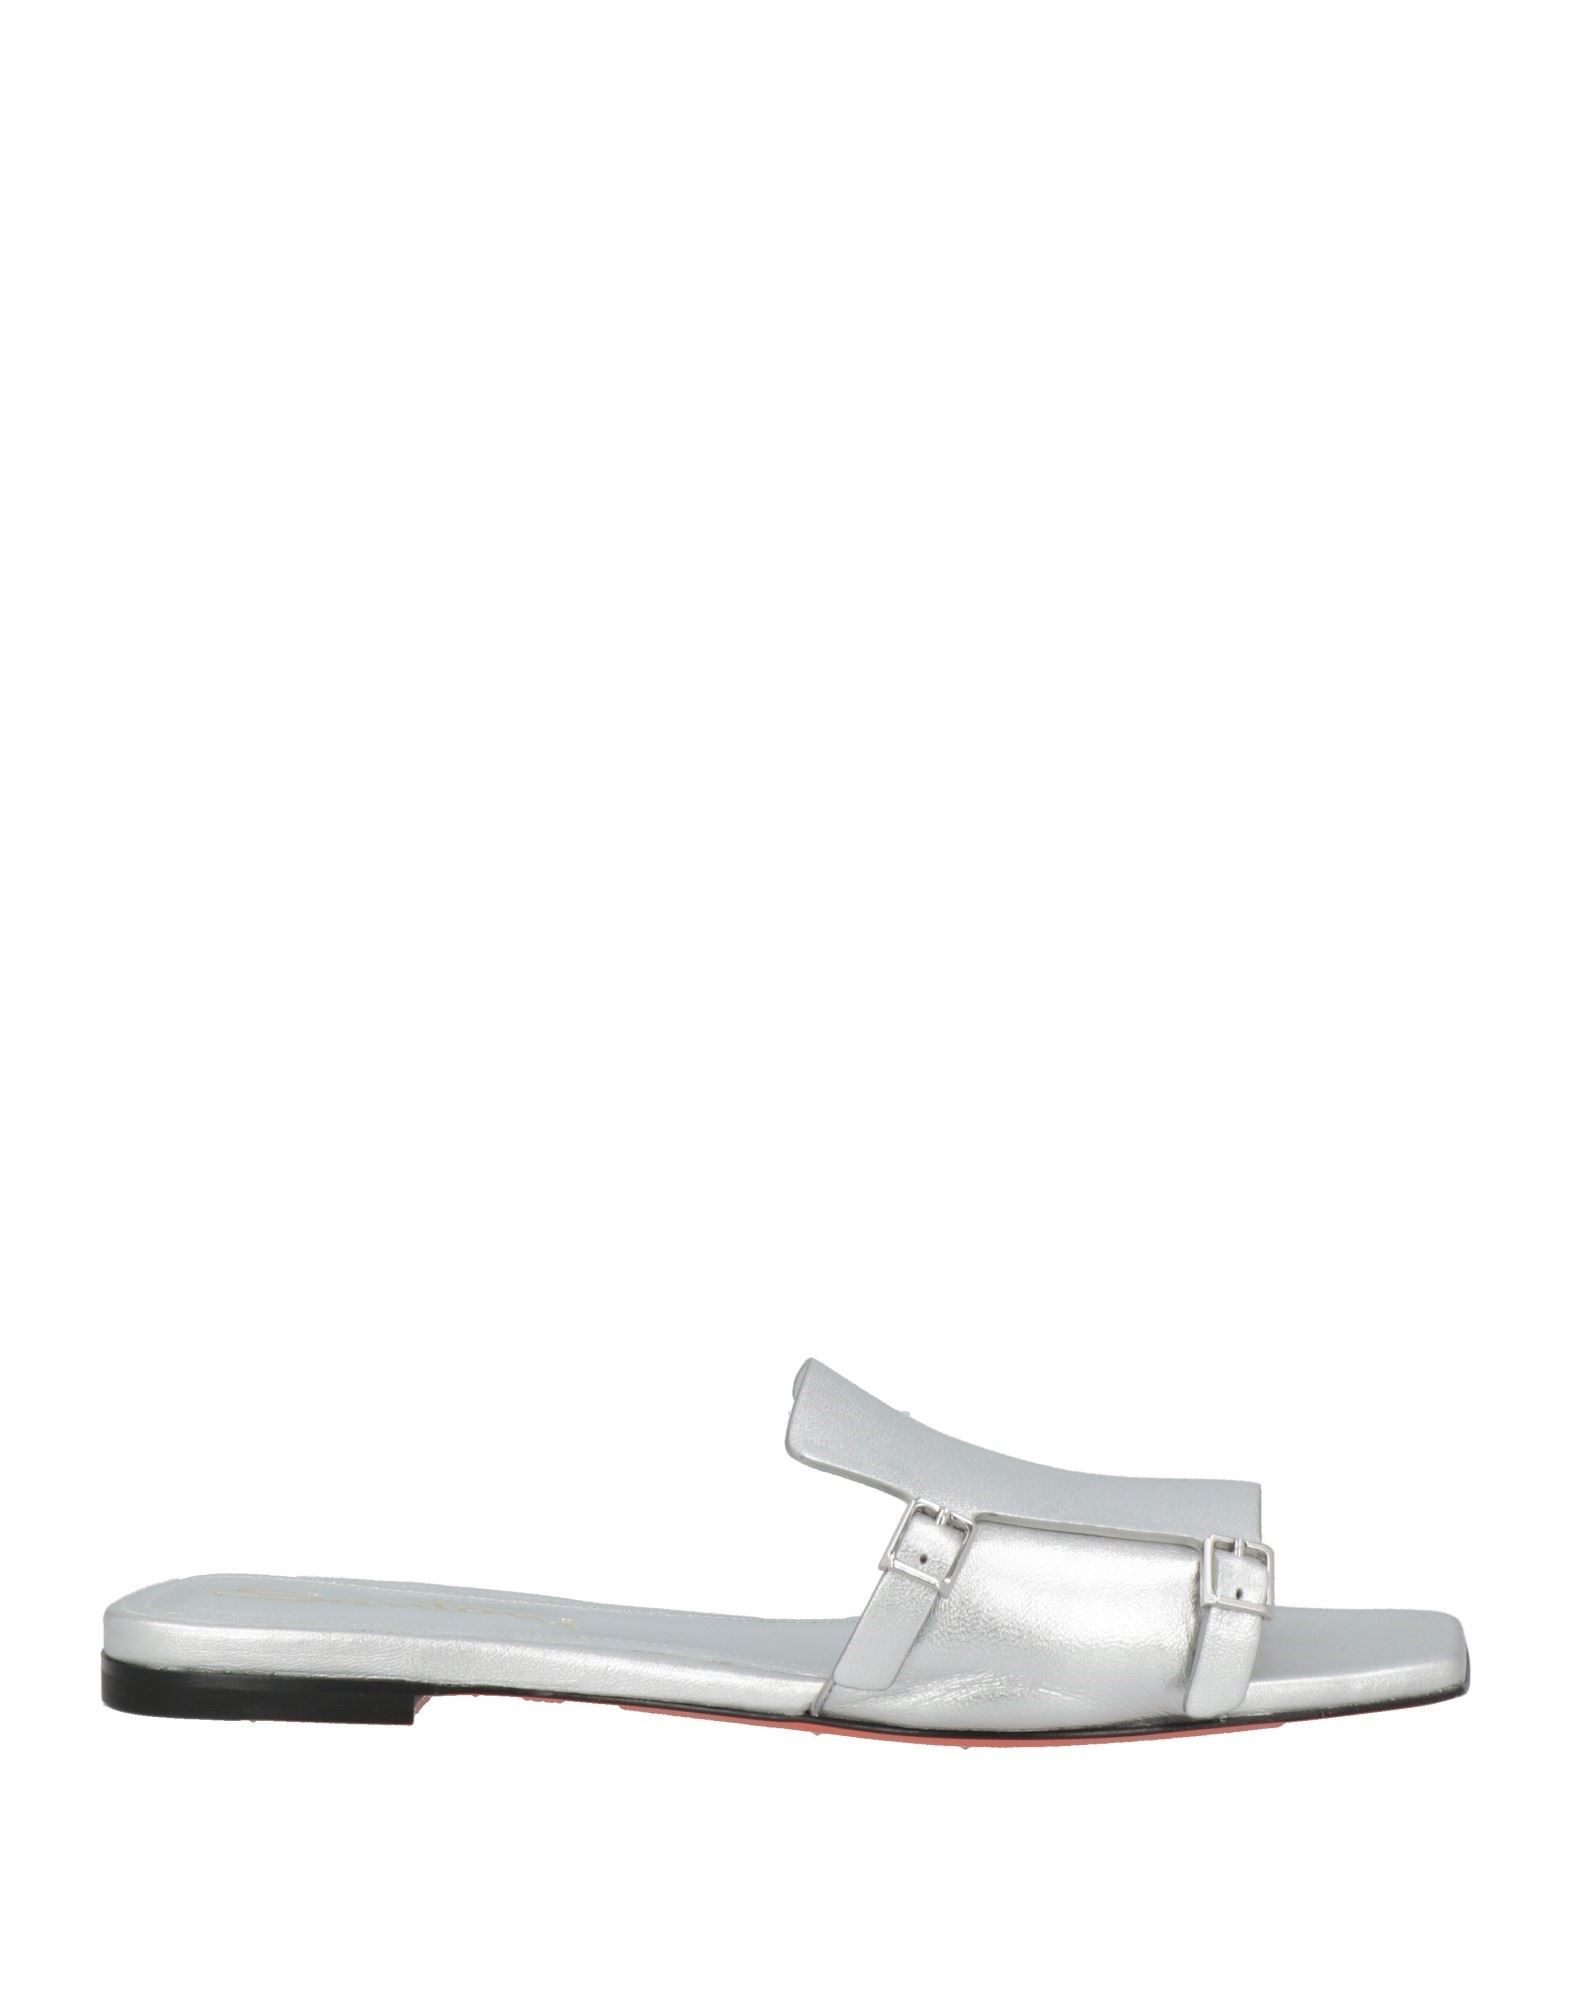 Shop Santoni Woman Sandals Silver Size 6.5 Leather